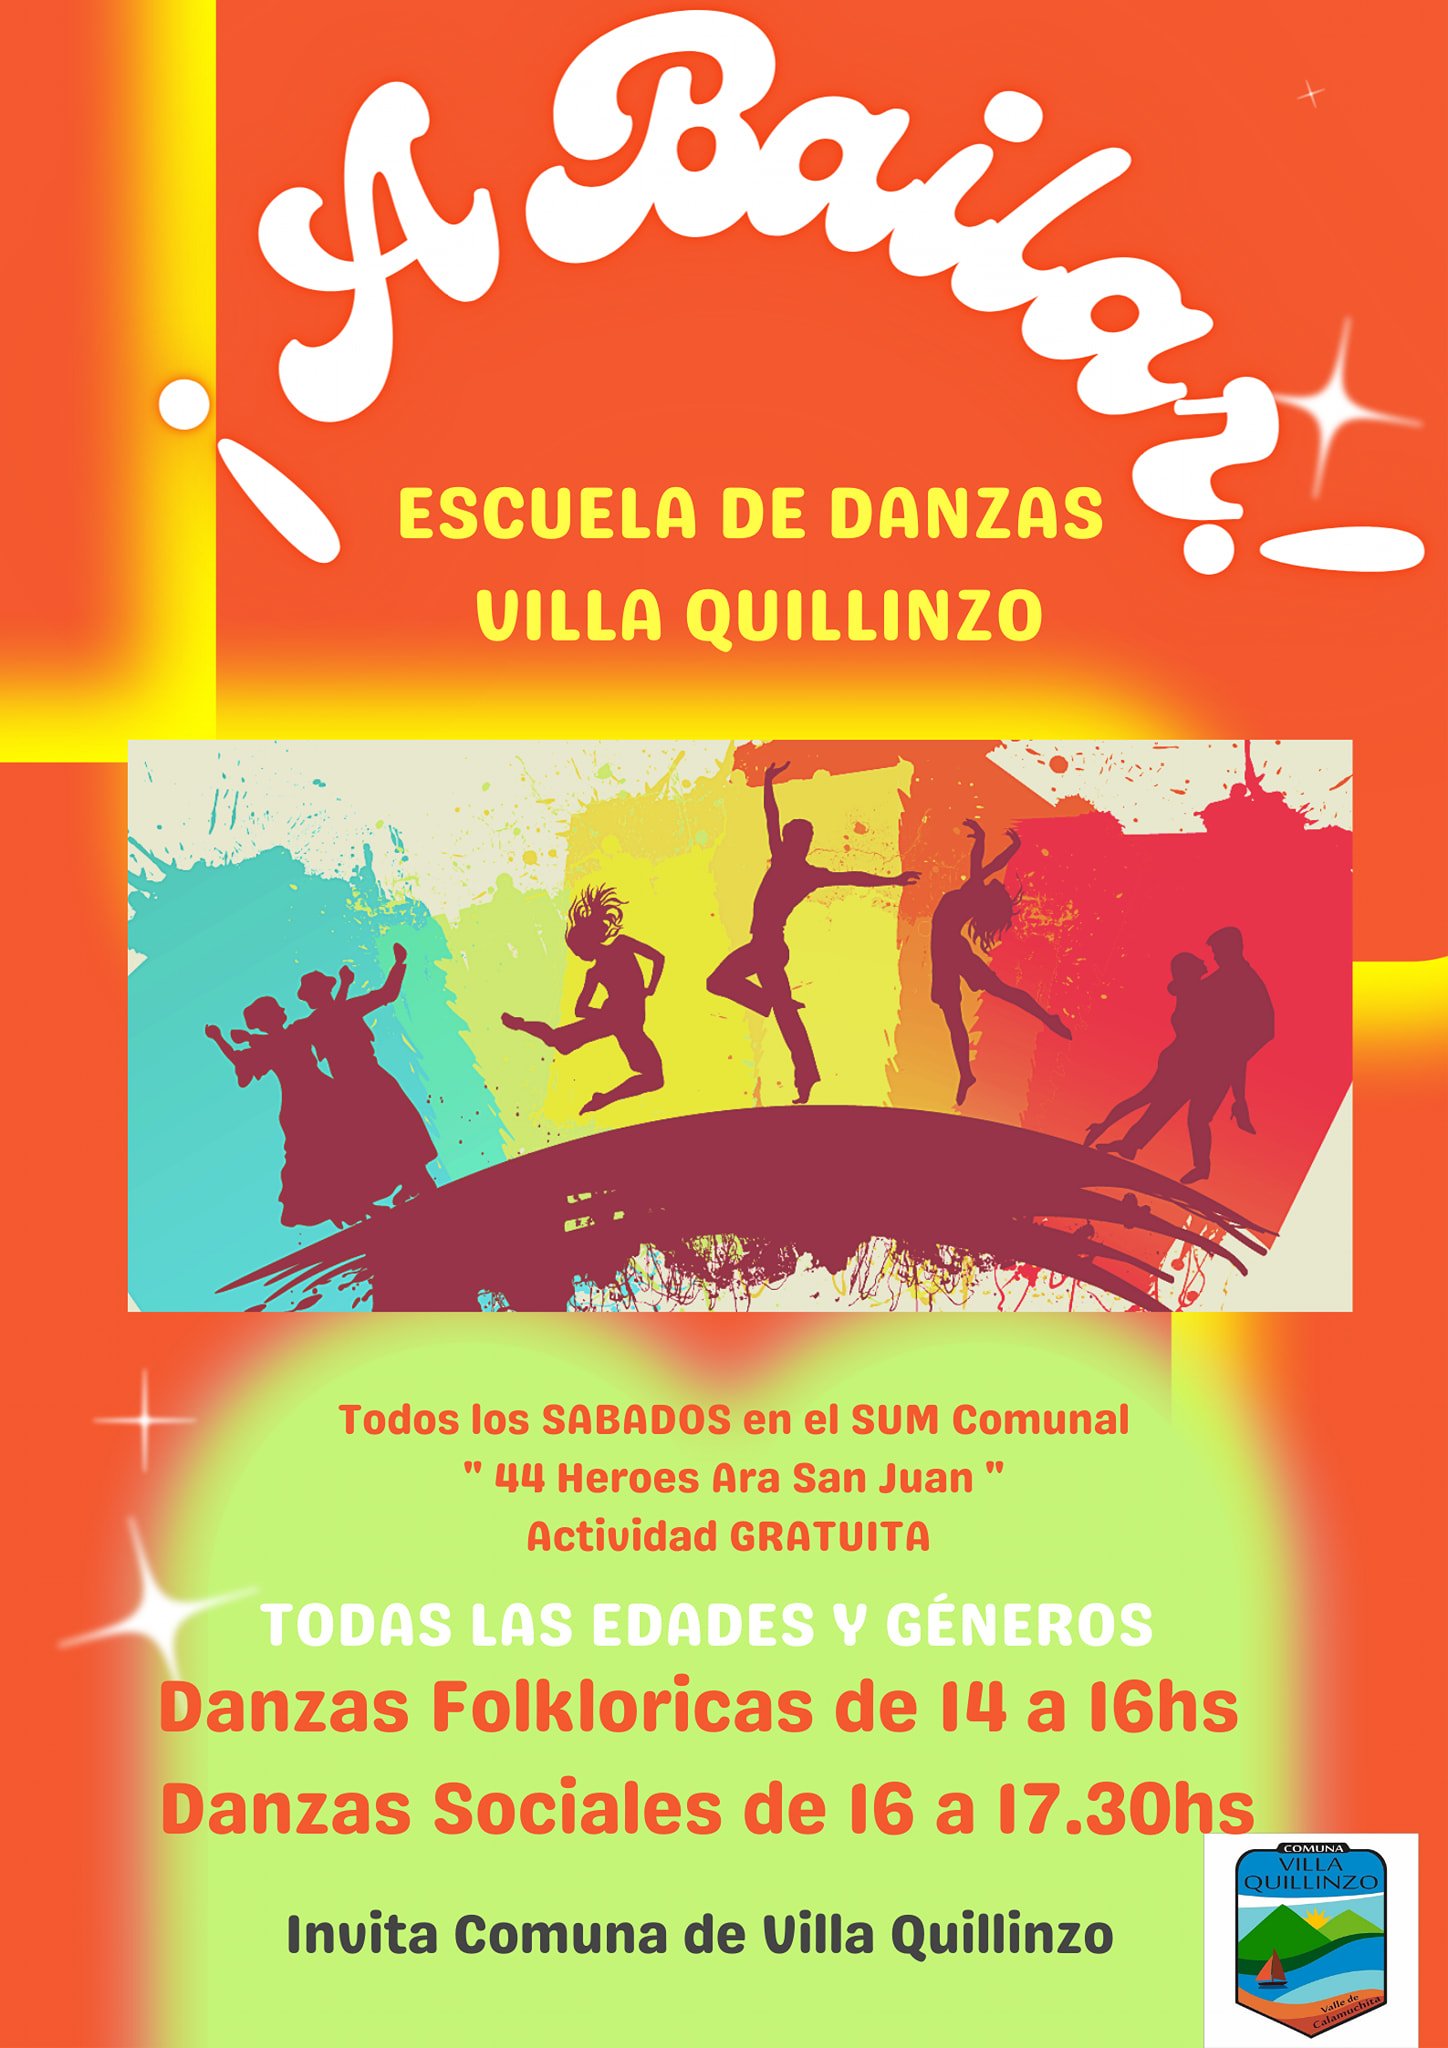 Villa Quillinzo tendrá Escuela de Danzas-La Ola Digital